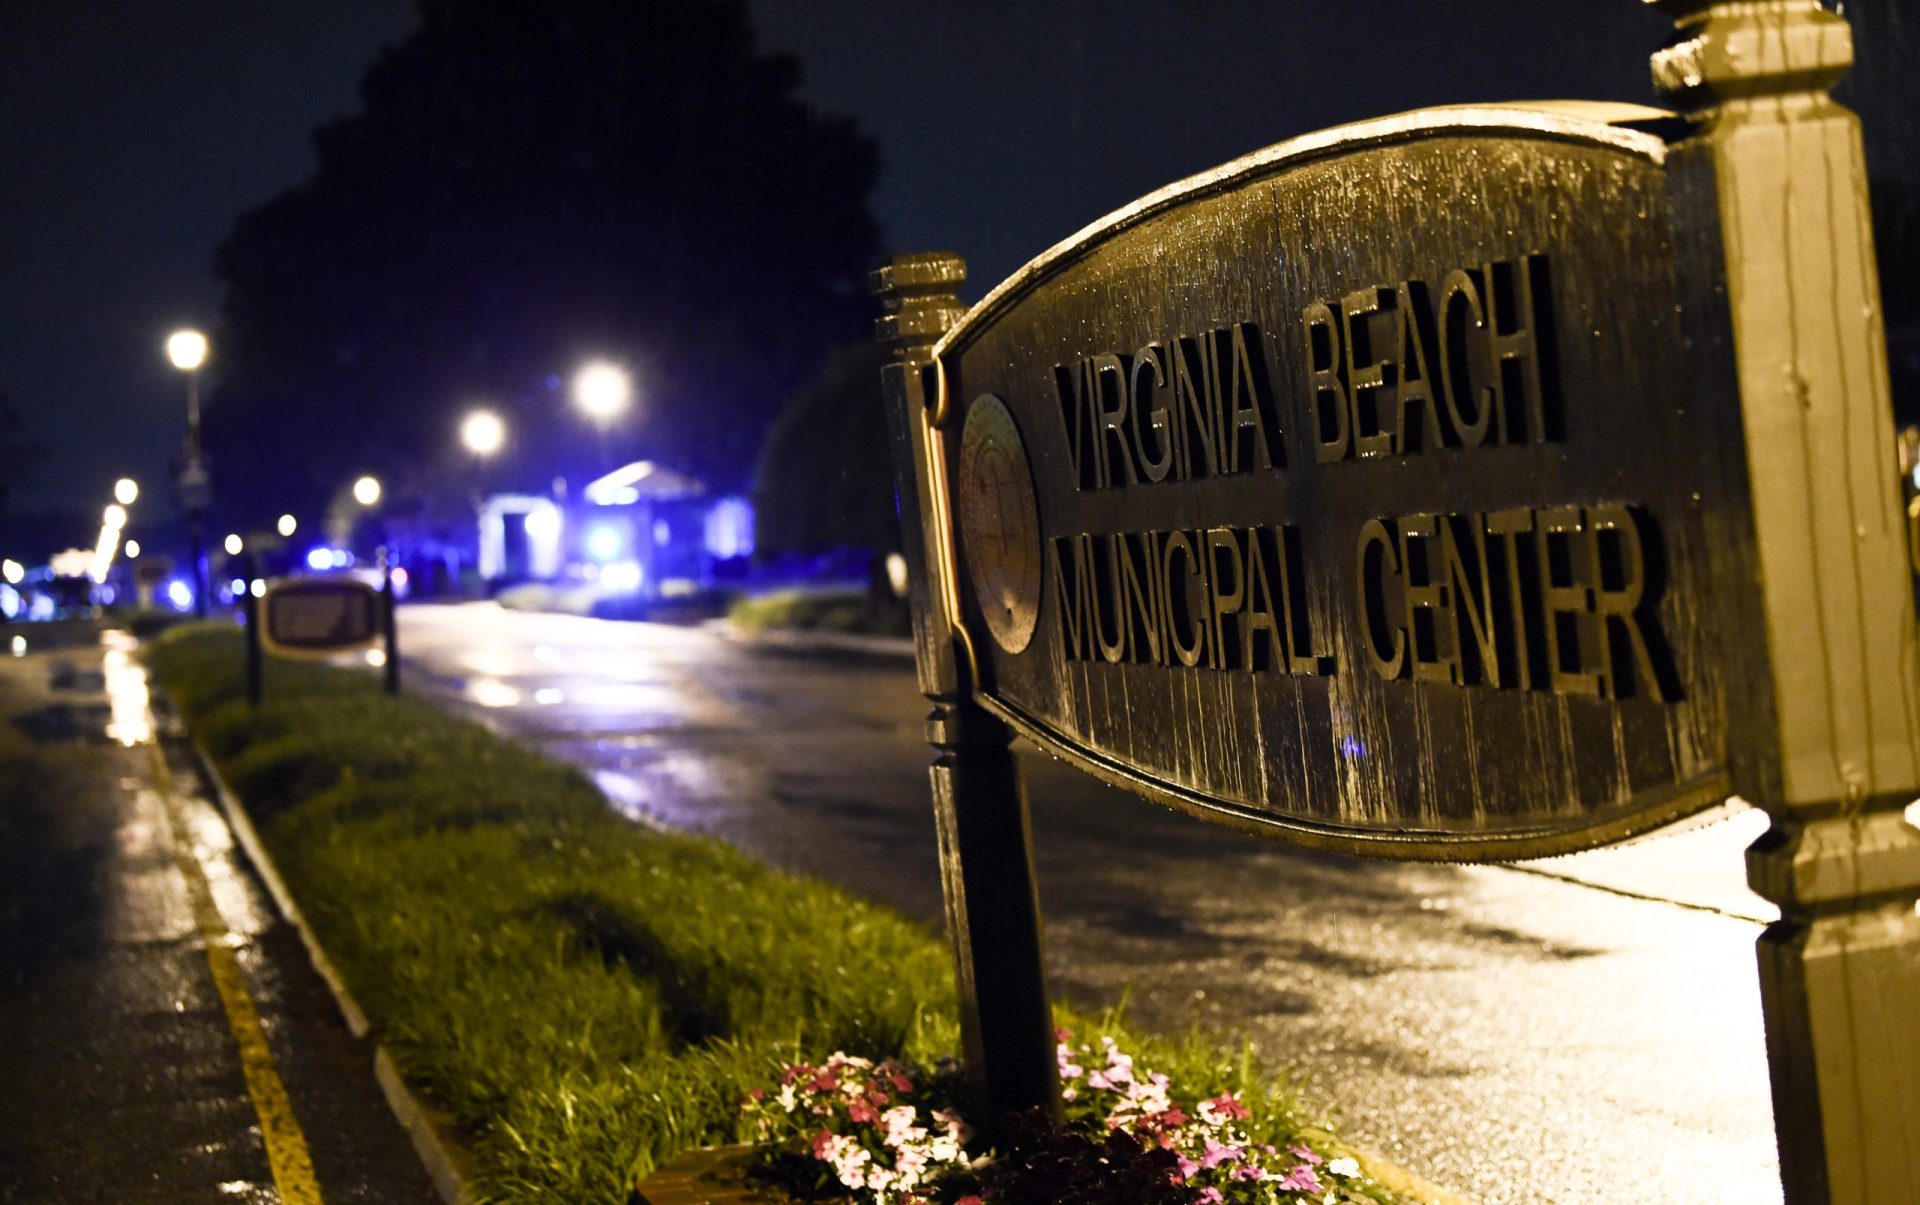 Homem matou doze colegas de trabalho em Virginia Beach nos EUA